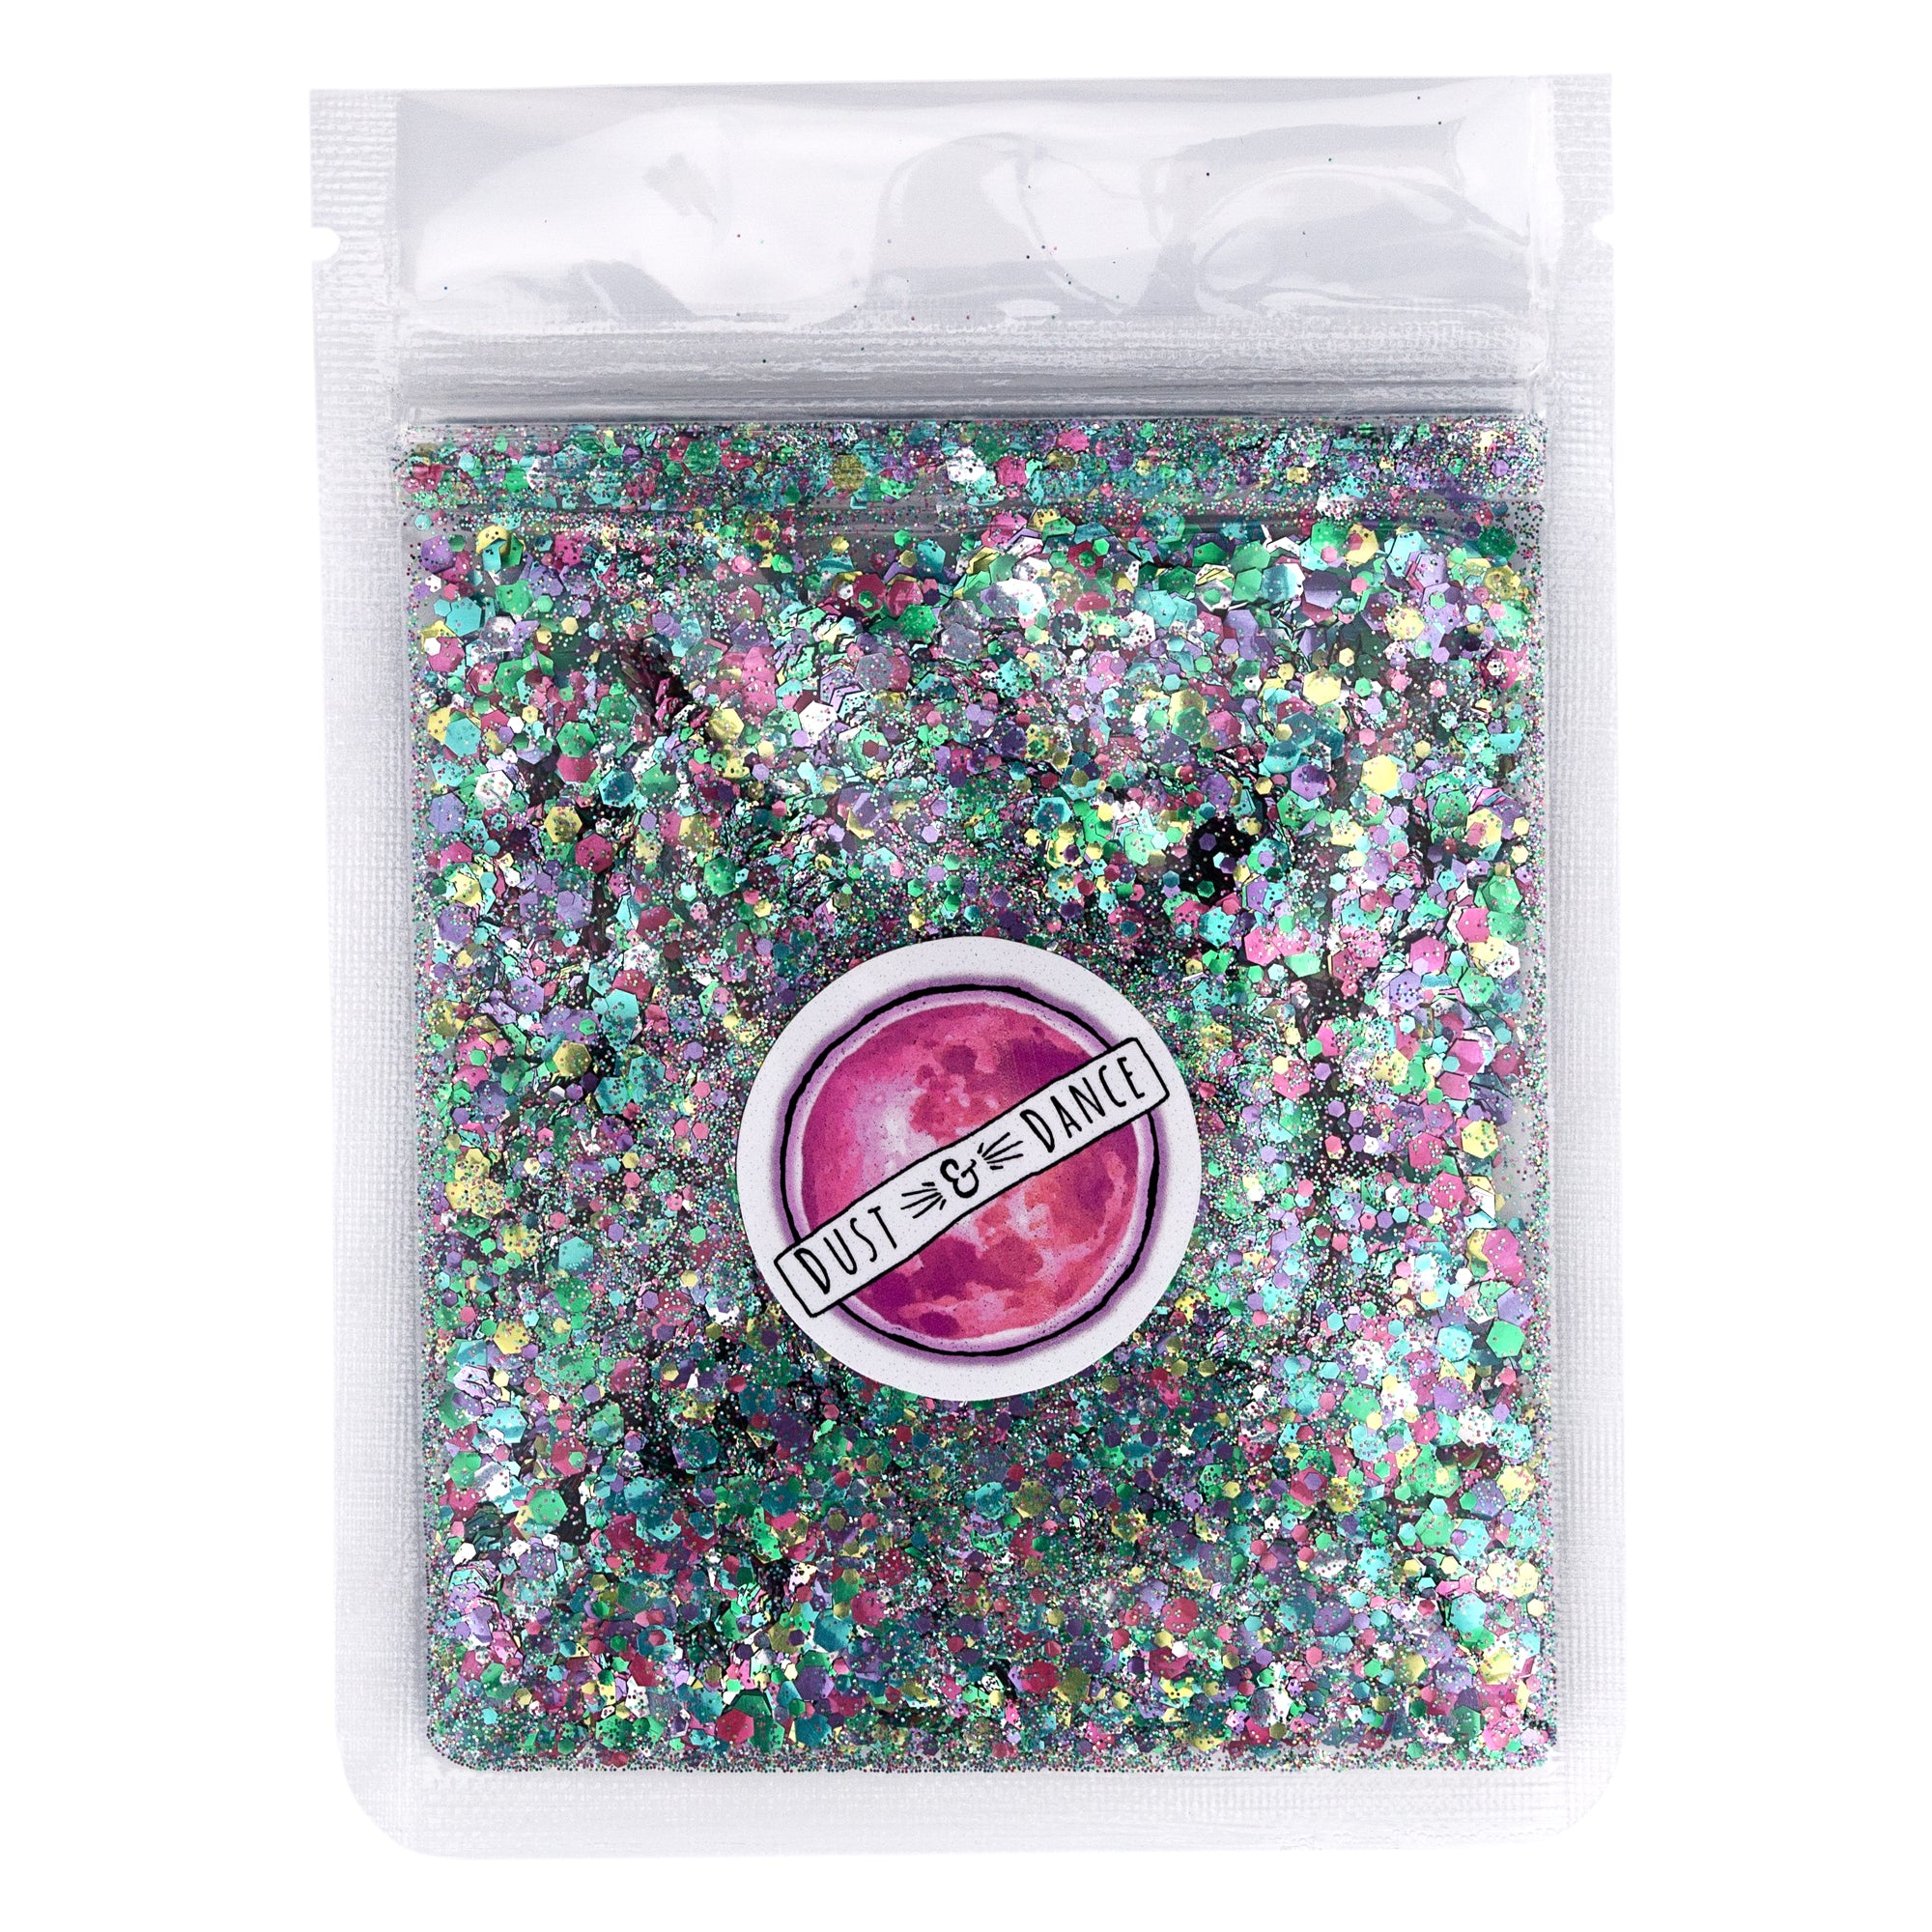 Deep Ocean - biodegradable glitter mix Australia